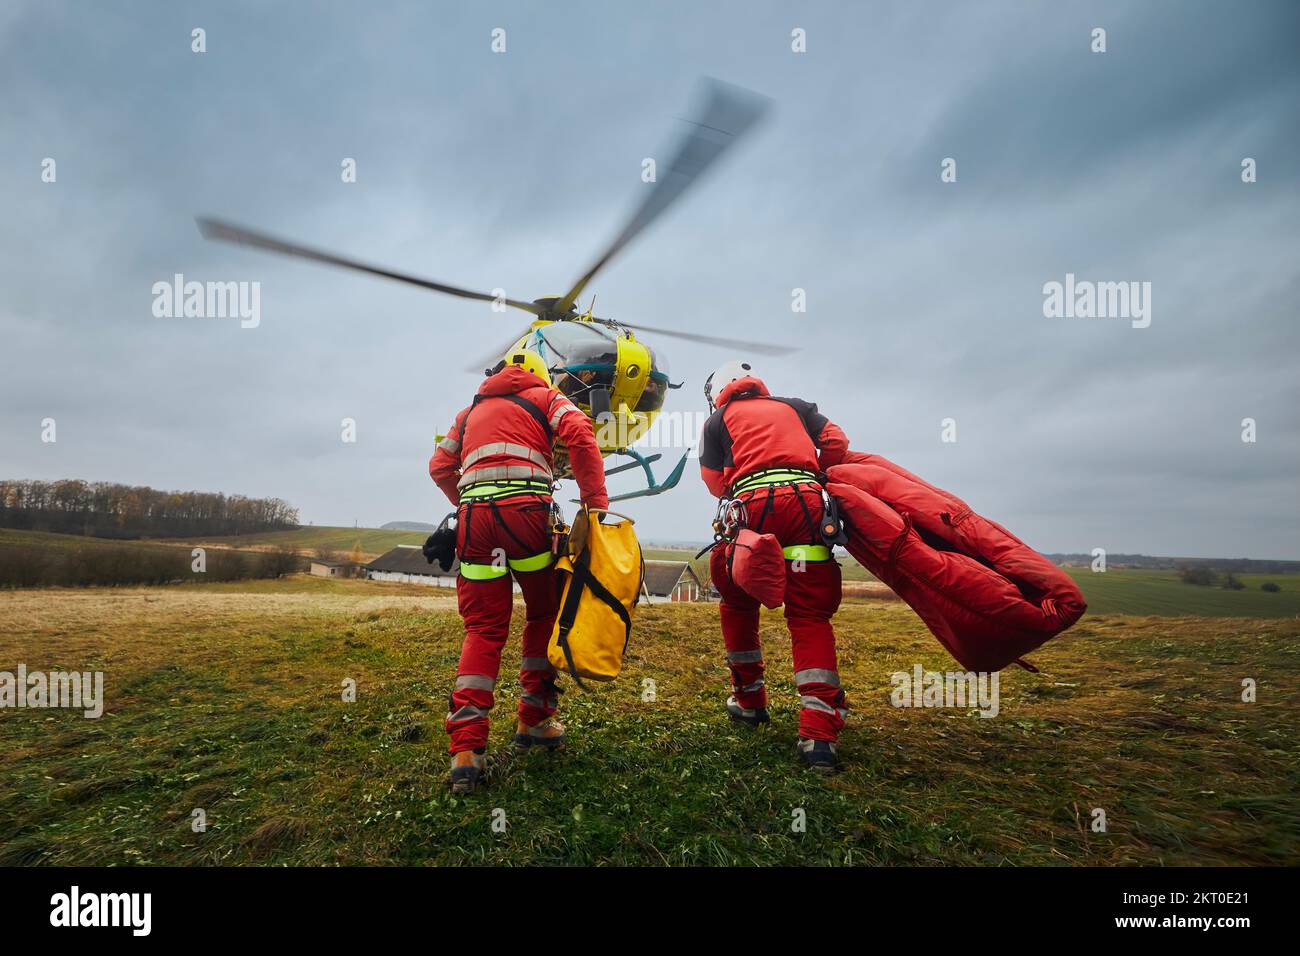 Zwei Sanitäter mit Auffanggurt und Kletterausrüstung, die zum Helikopter Rettungsdienst fahren. Die Themen Rettung, Hilfe und Hoffnung. . Stockfoto